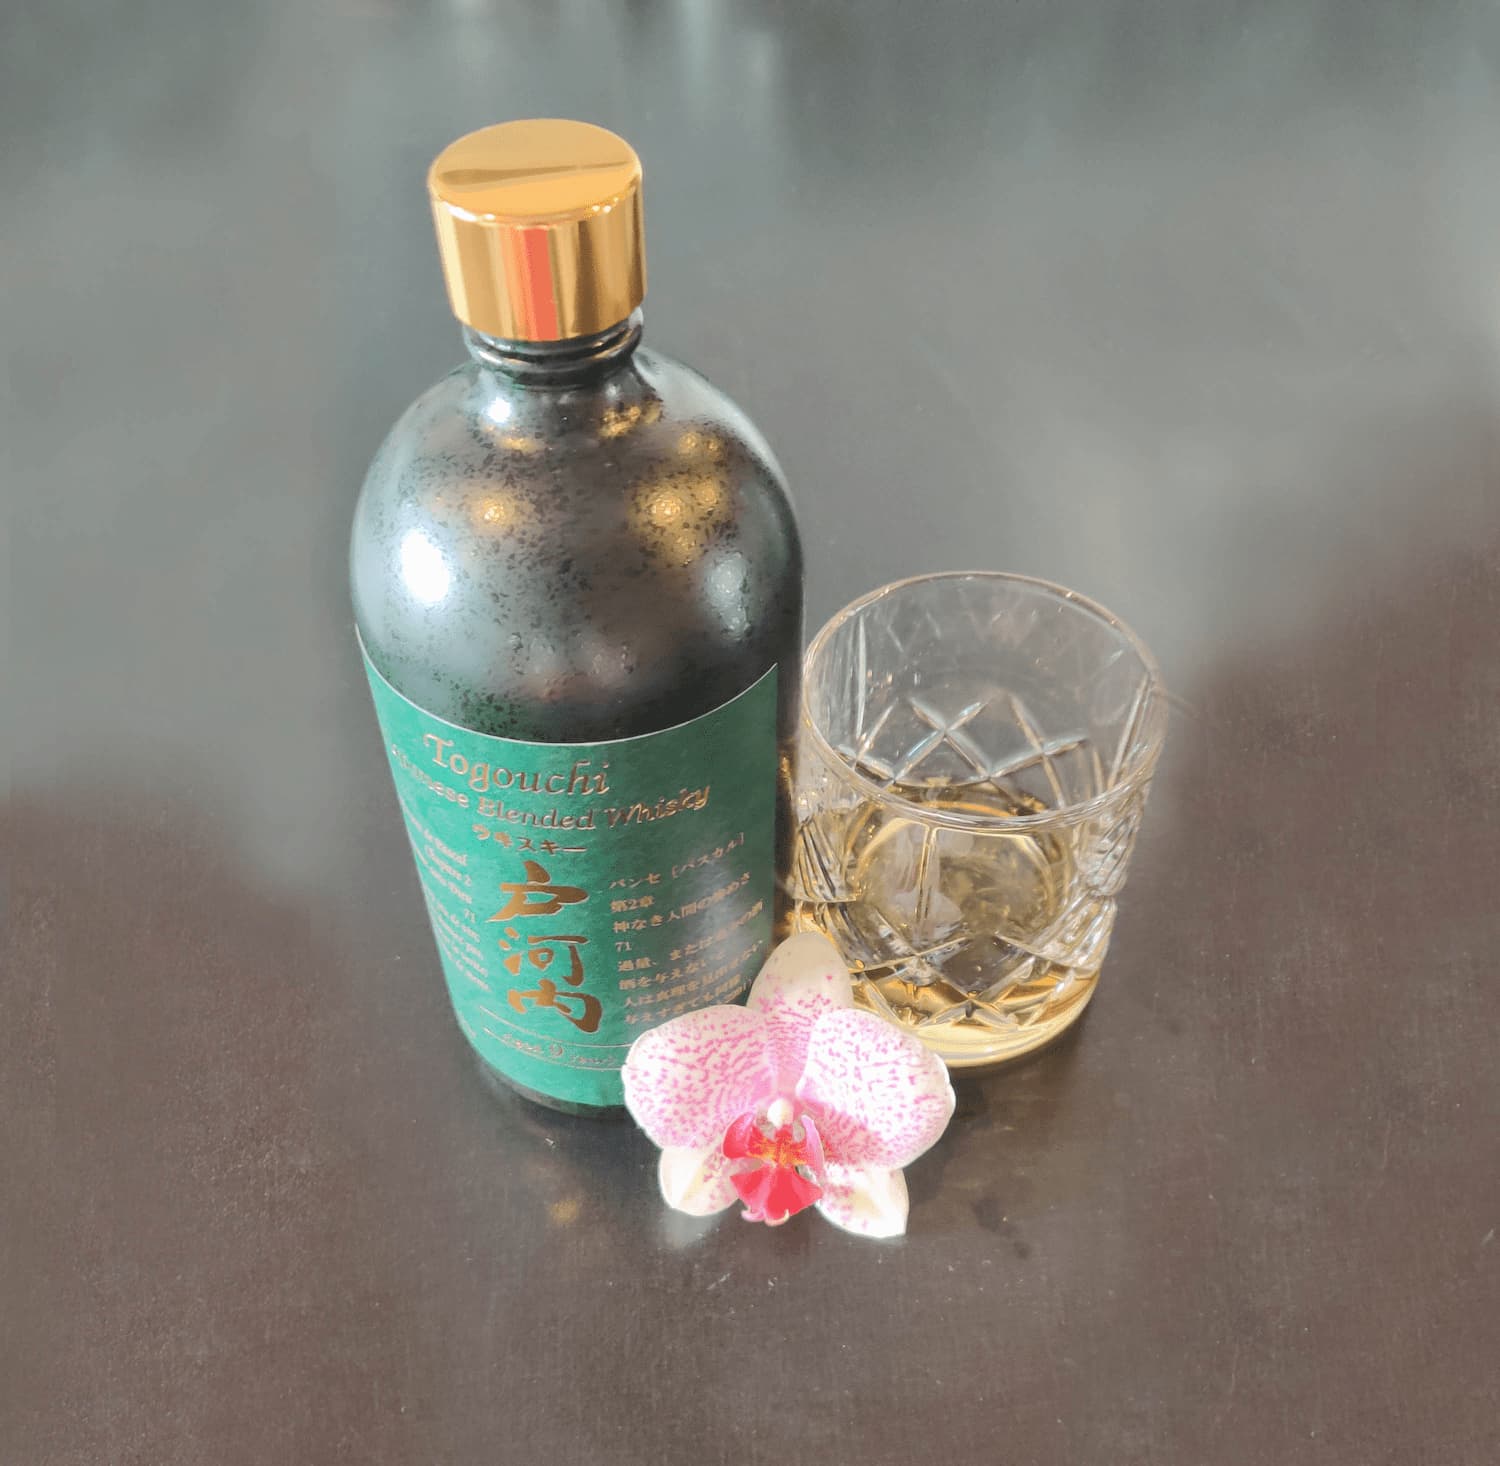 ogouchi Japanese Blended Whisky Aged 9 years